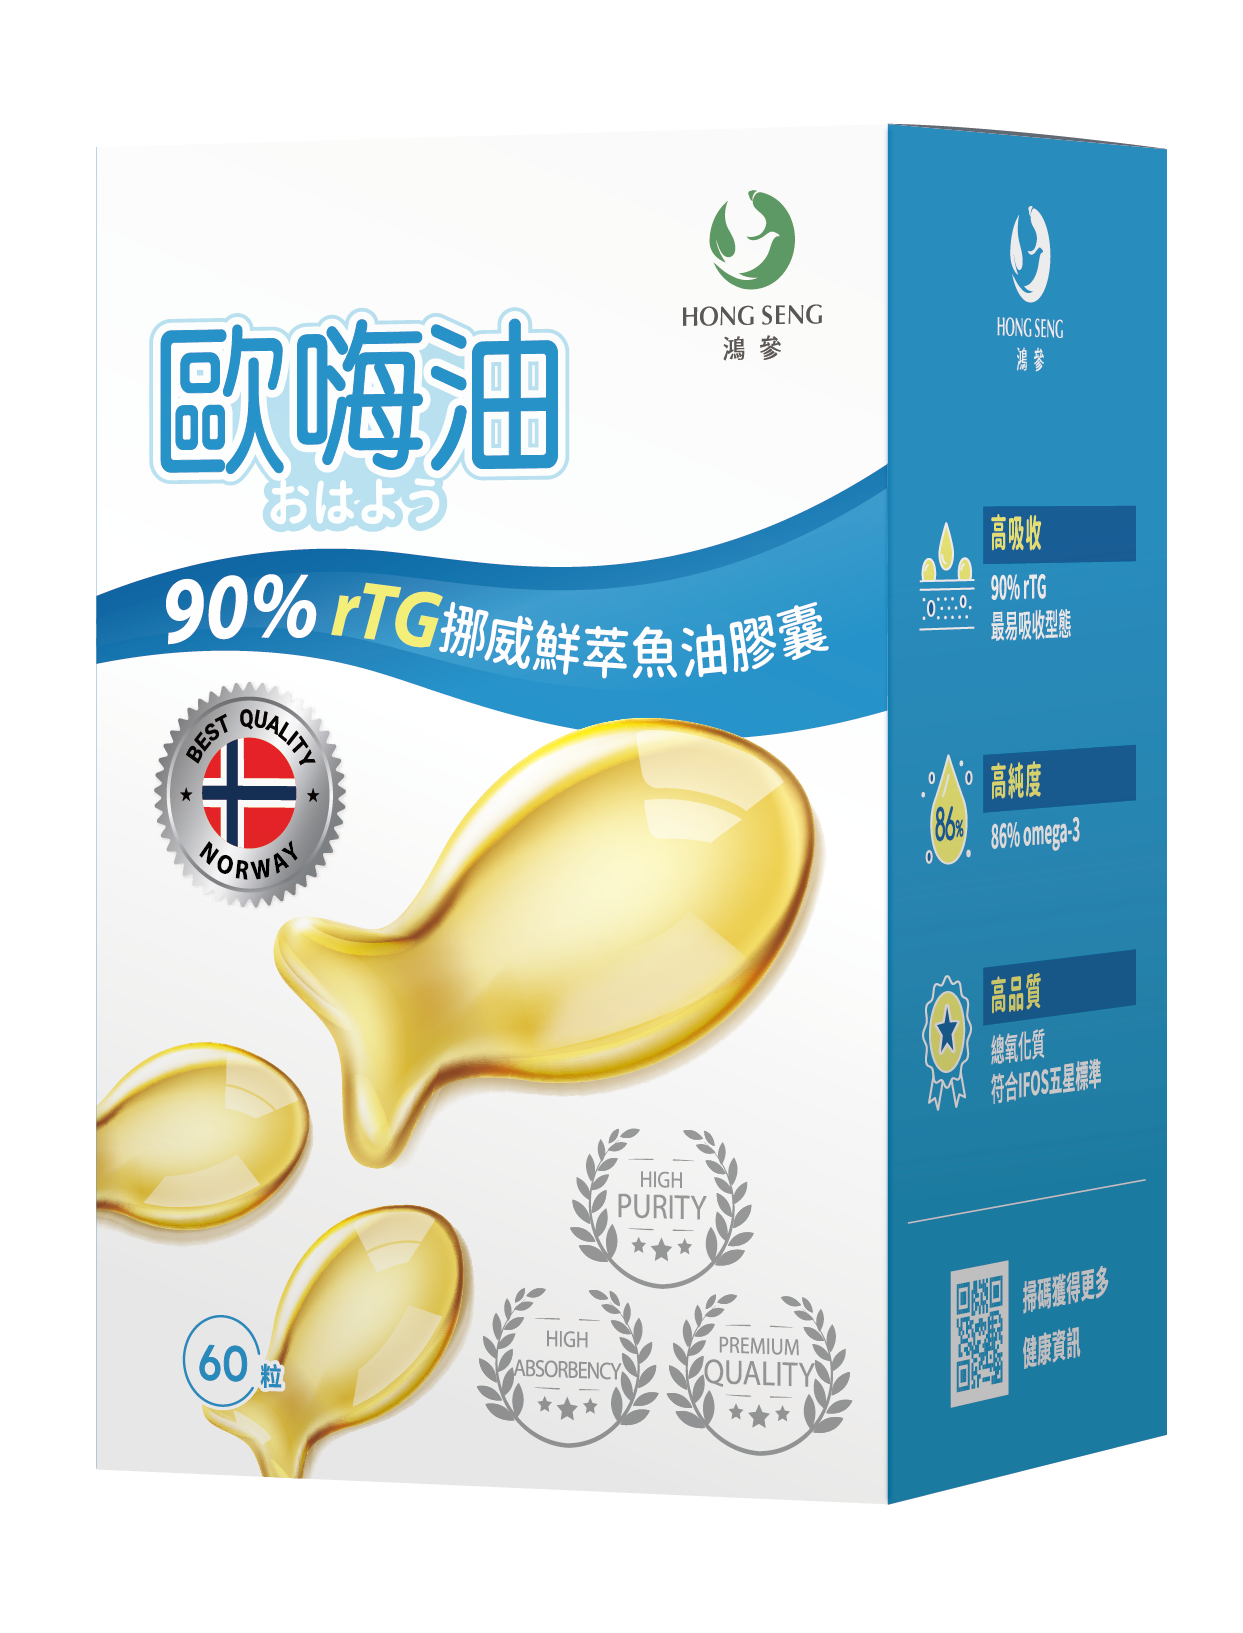 ⚡新品雙入75折⚡【鴻參】90%rTG挪威鮮萃魚油(3入組)